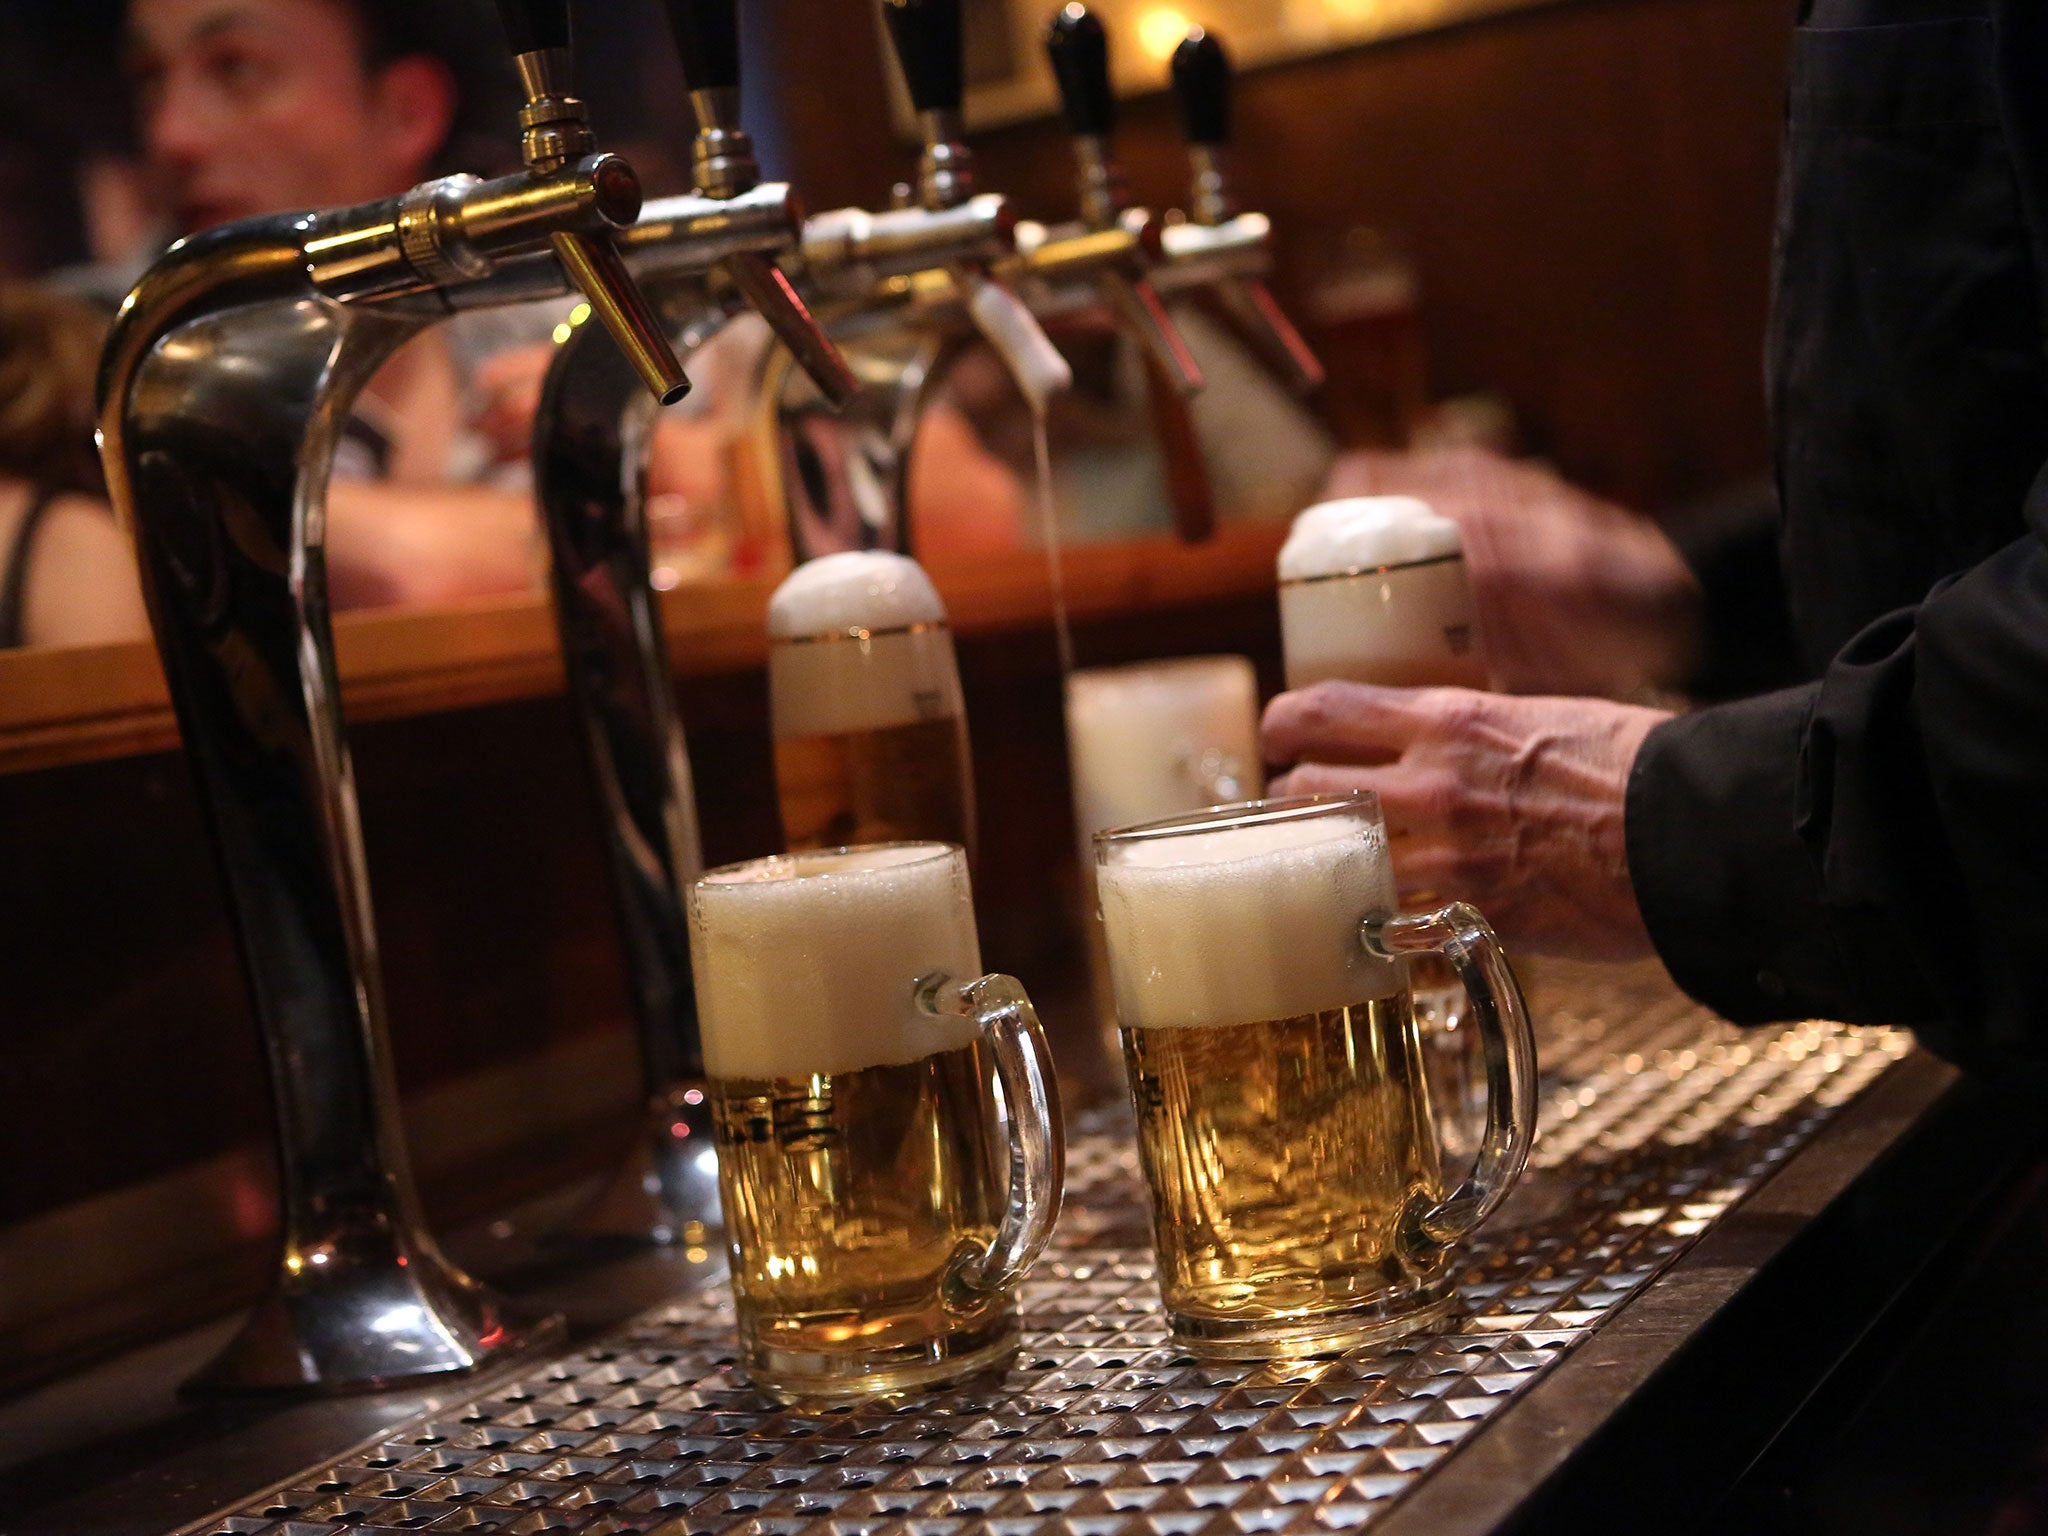 A bartender serves beers